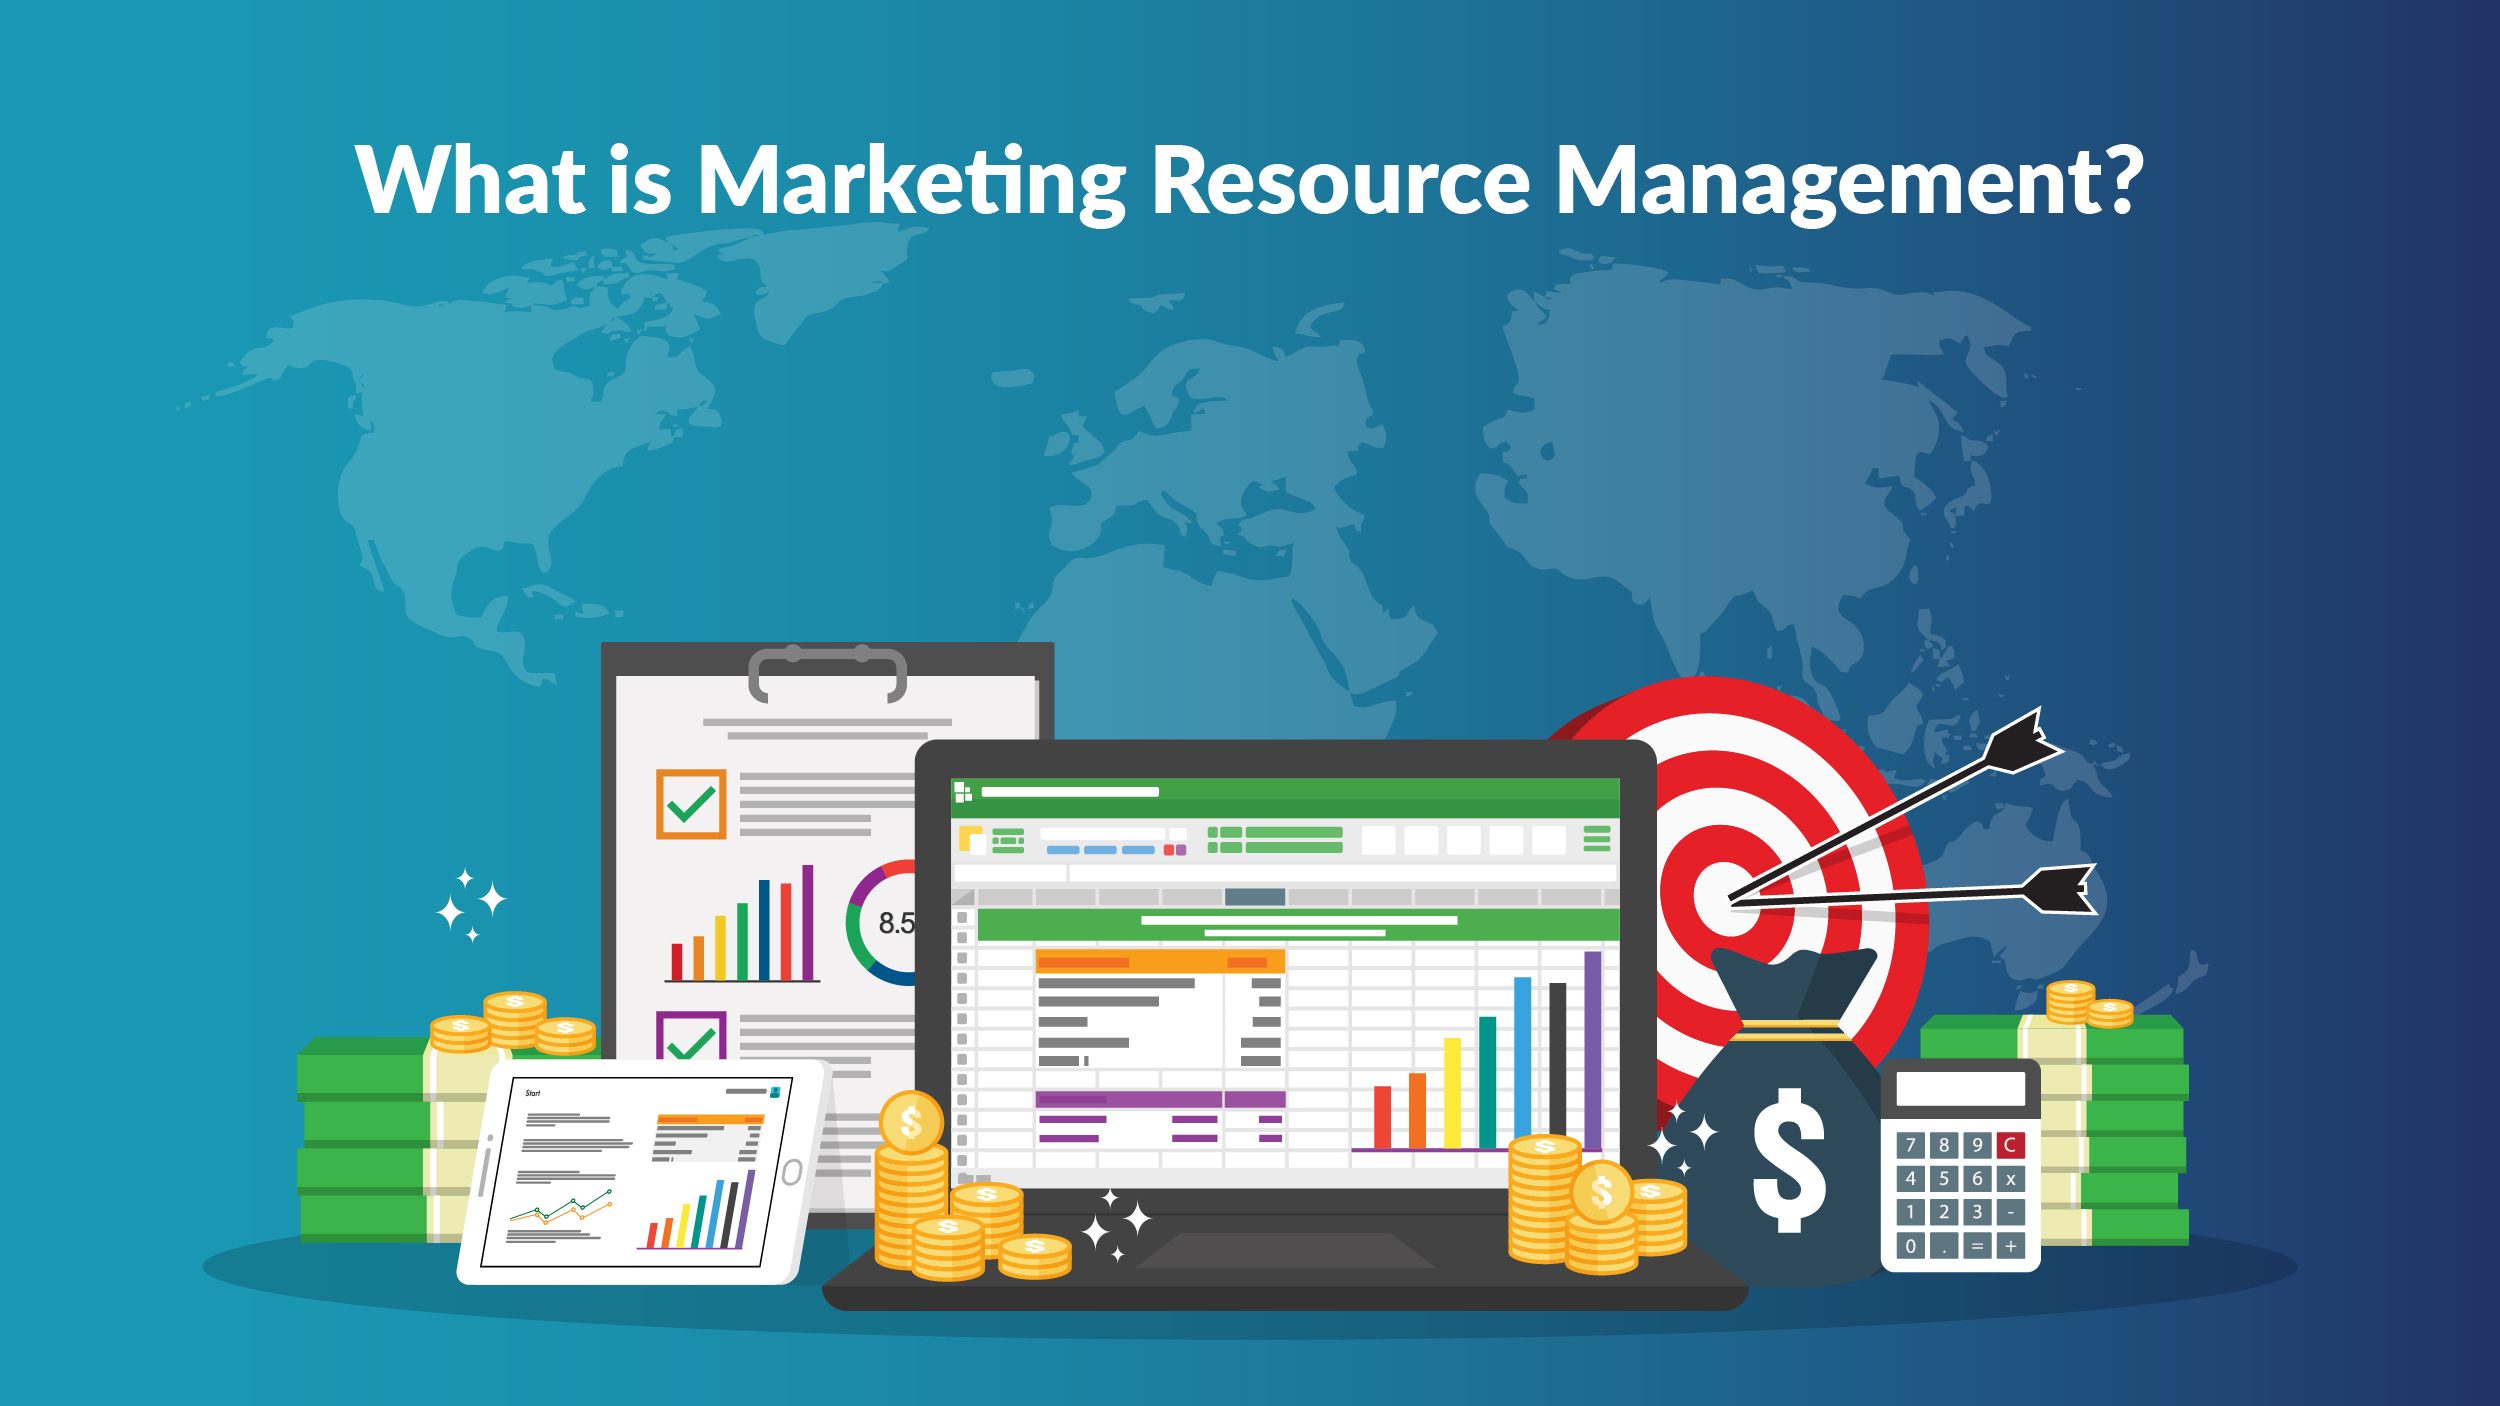  Marketing Resource Management